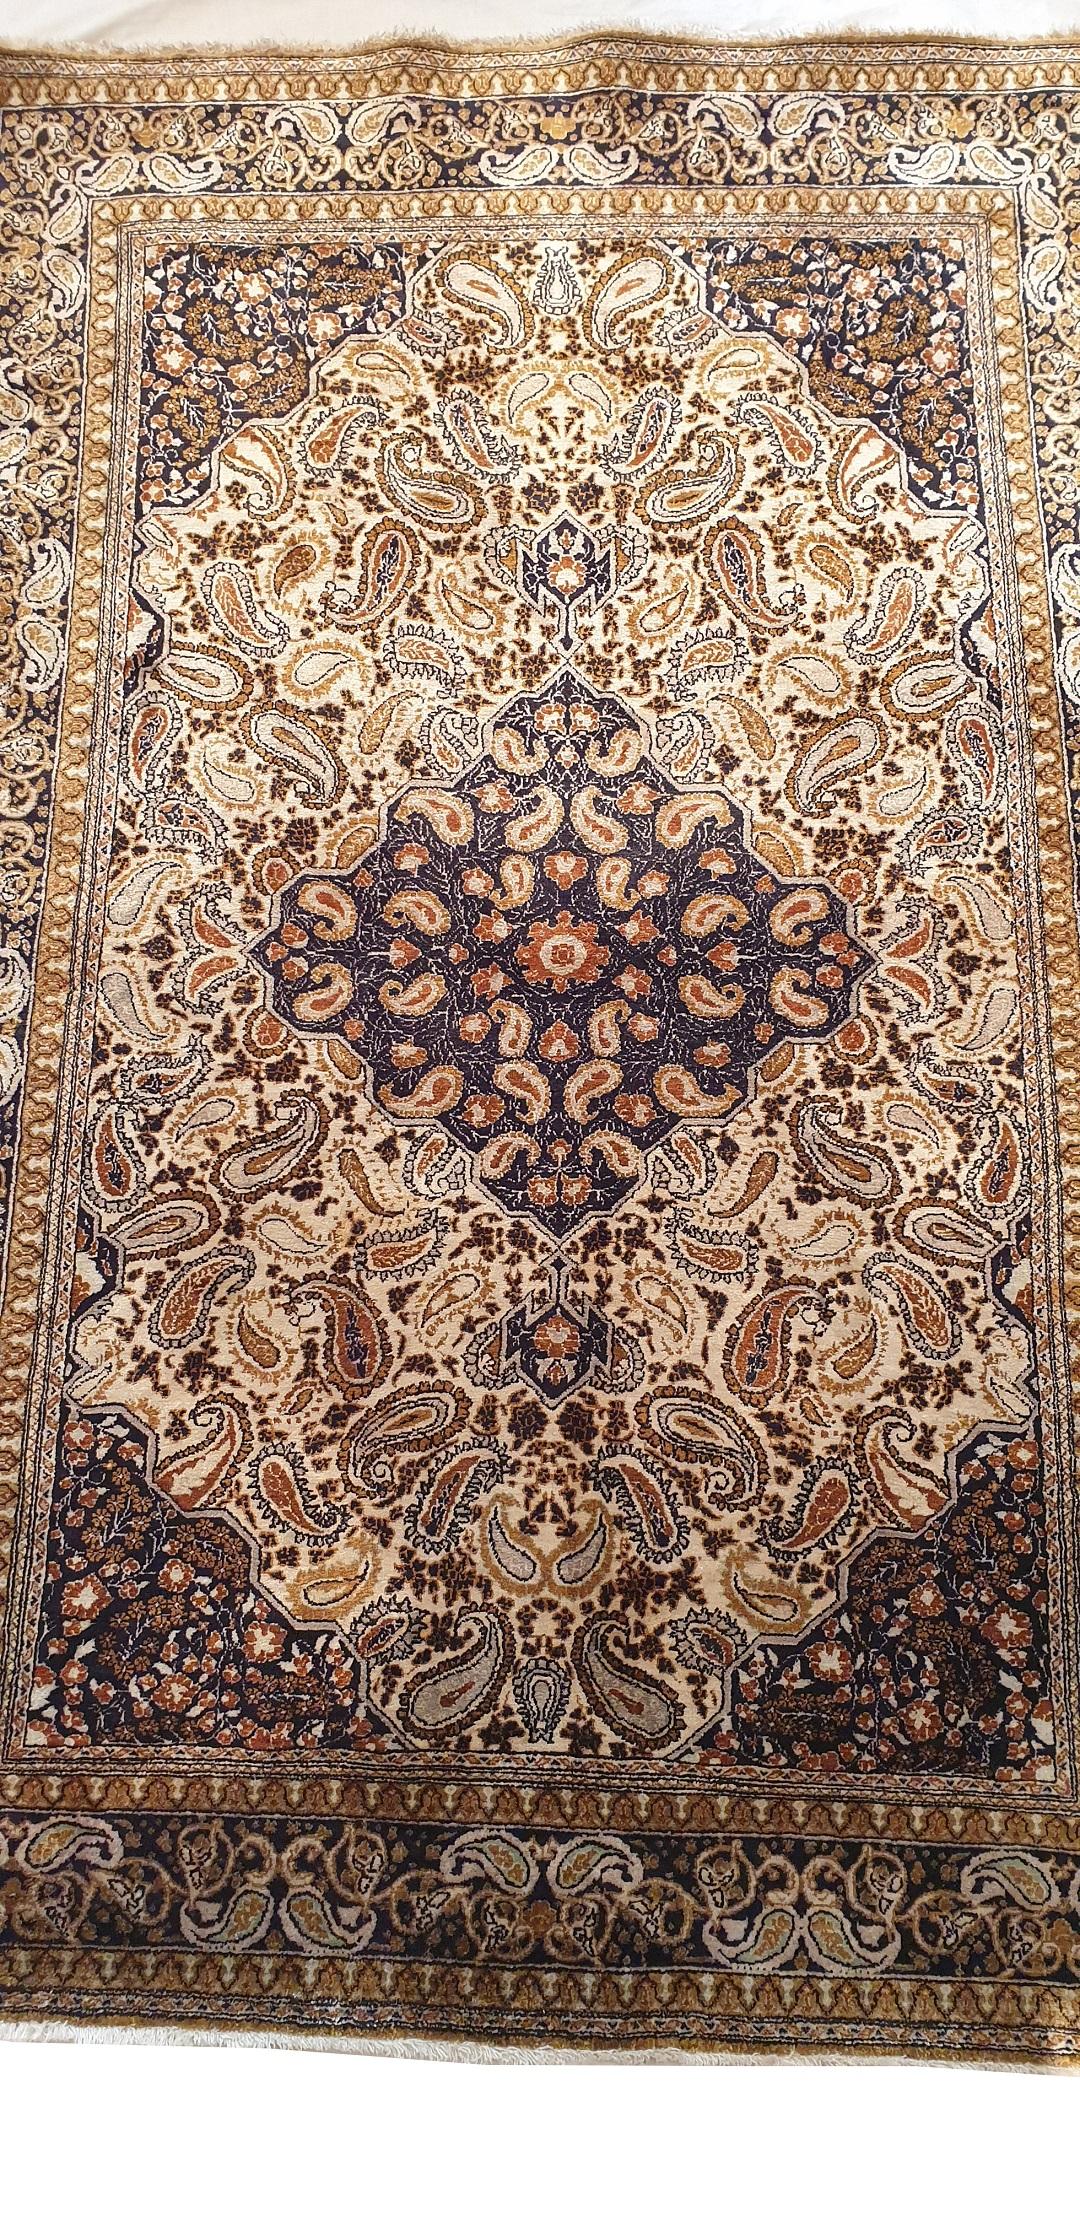 740 -  sehr schöner Teppich aus der Mitte des 20. Jahrhunderts mit einem schönen zentralen floralen Medaillonmuster und schönen Farben, vollständig und fein handgeknüpft mit Seidensamt auf einer Seidenunterlage.